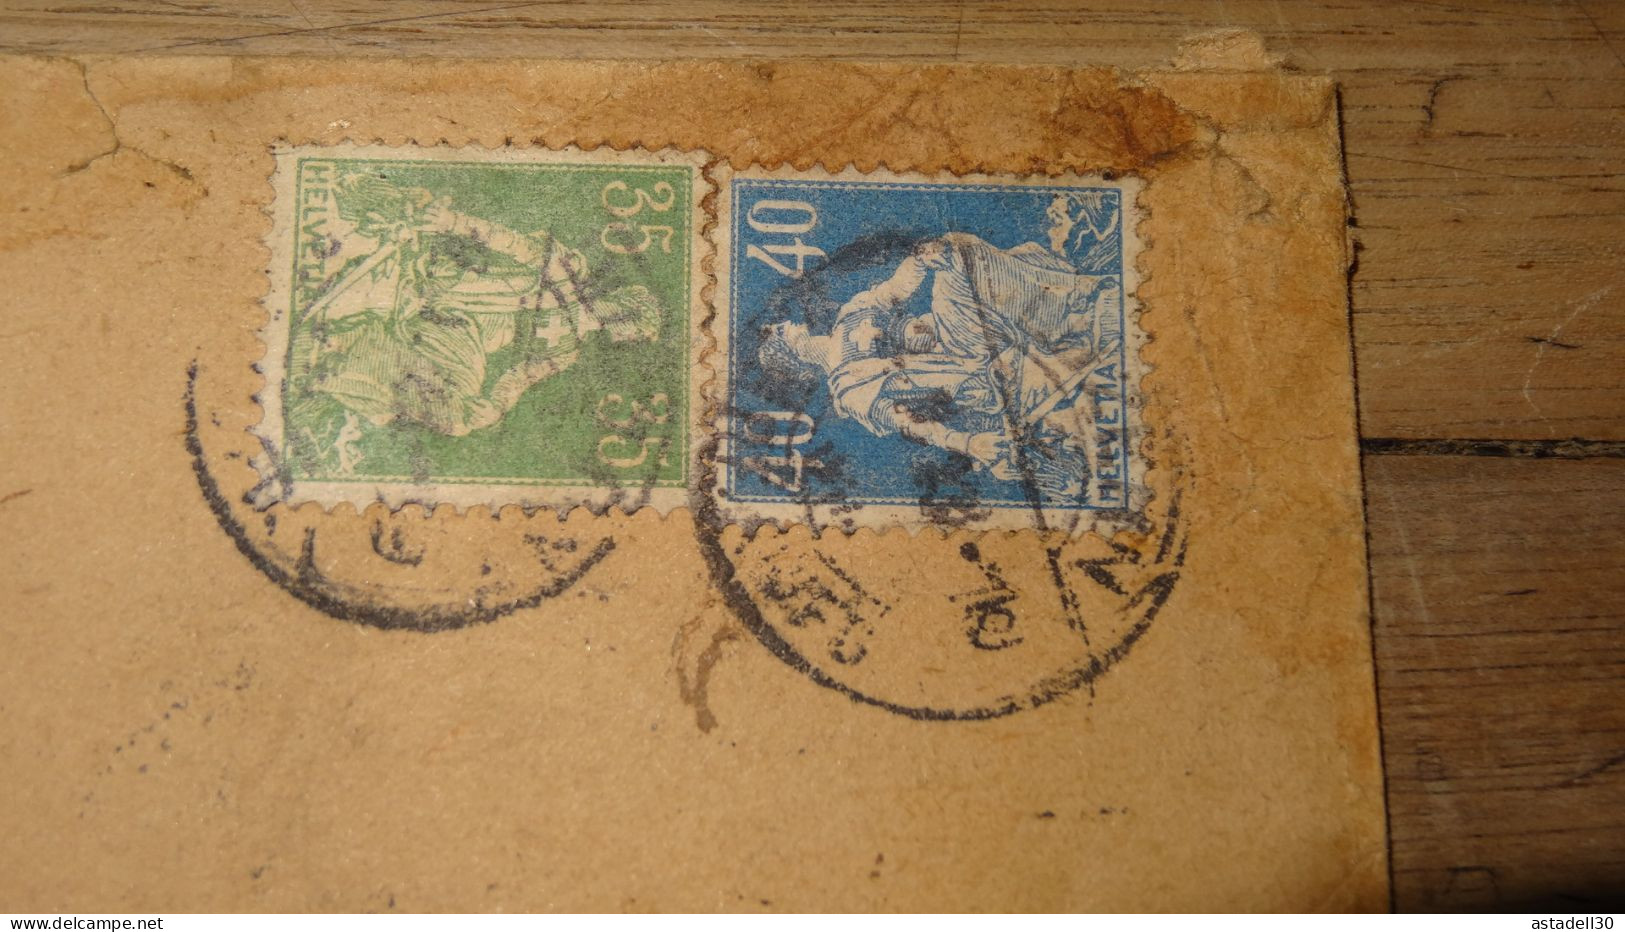 Enveloppe, SUISSE, Luzern1, Chargée - 1923  ......... Boite1 ...... 240424-140 - Lettres & Documents